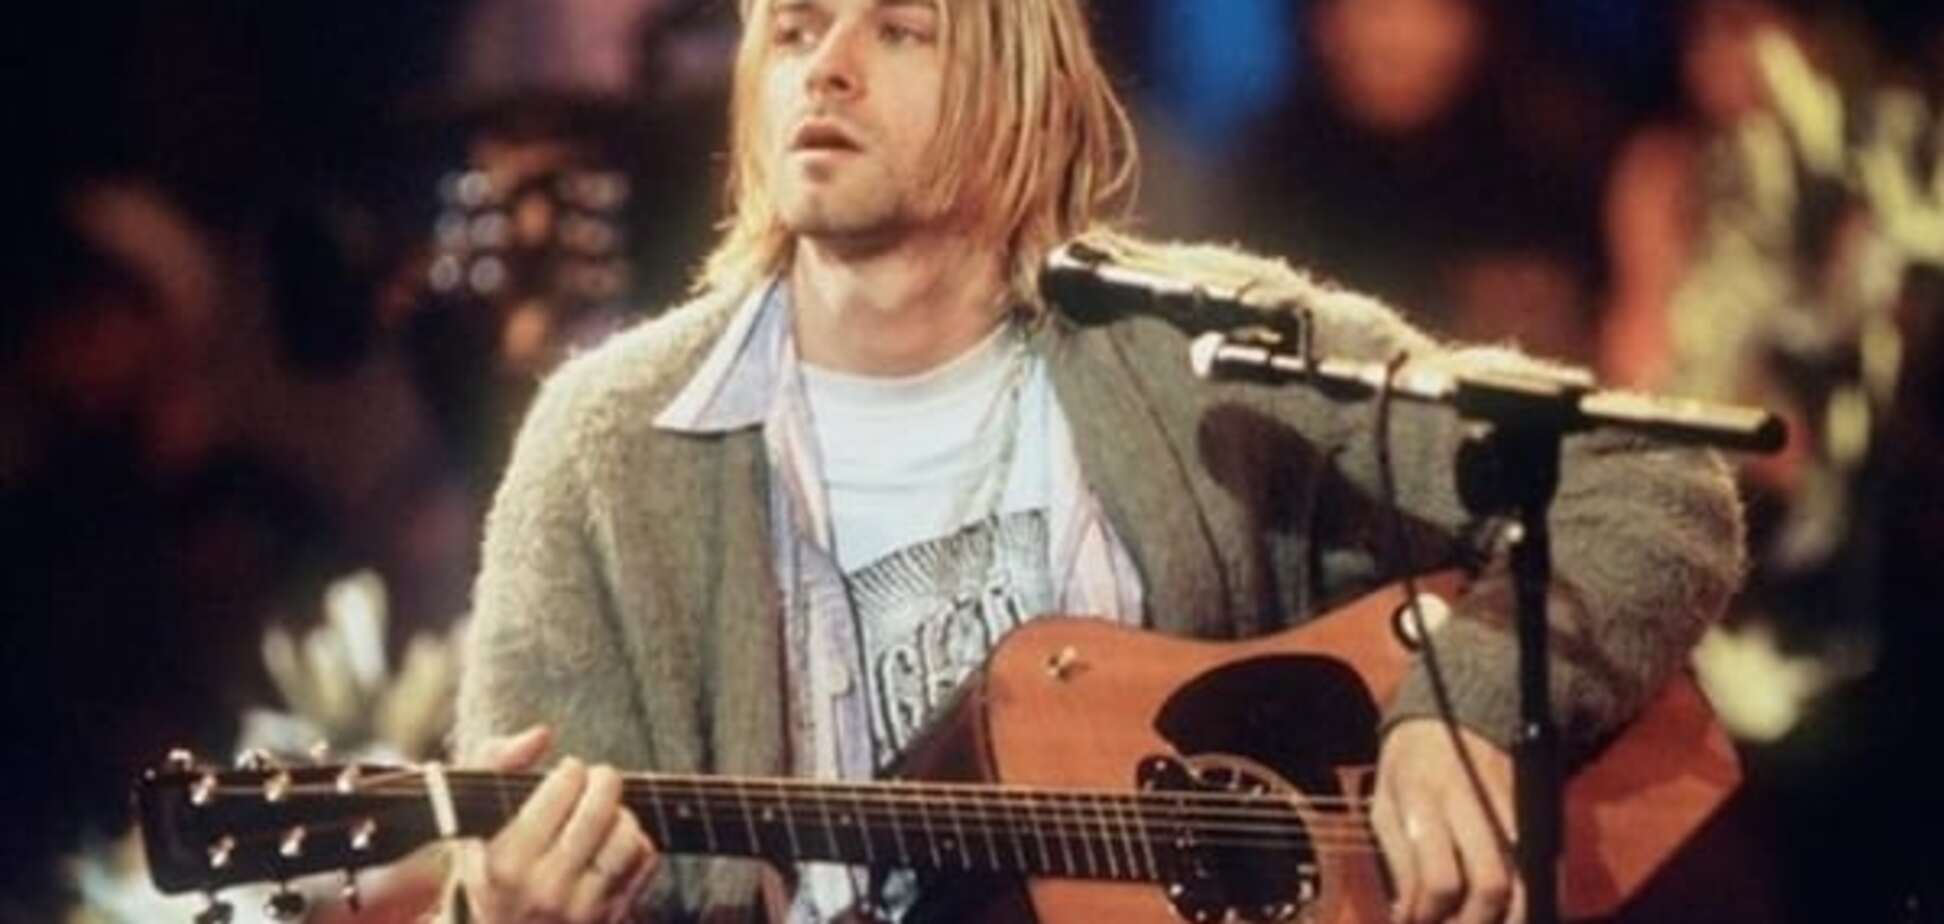 Ексклюзив: у мережі з'явився раніше невідомий запис Nirvana. Відеофакт